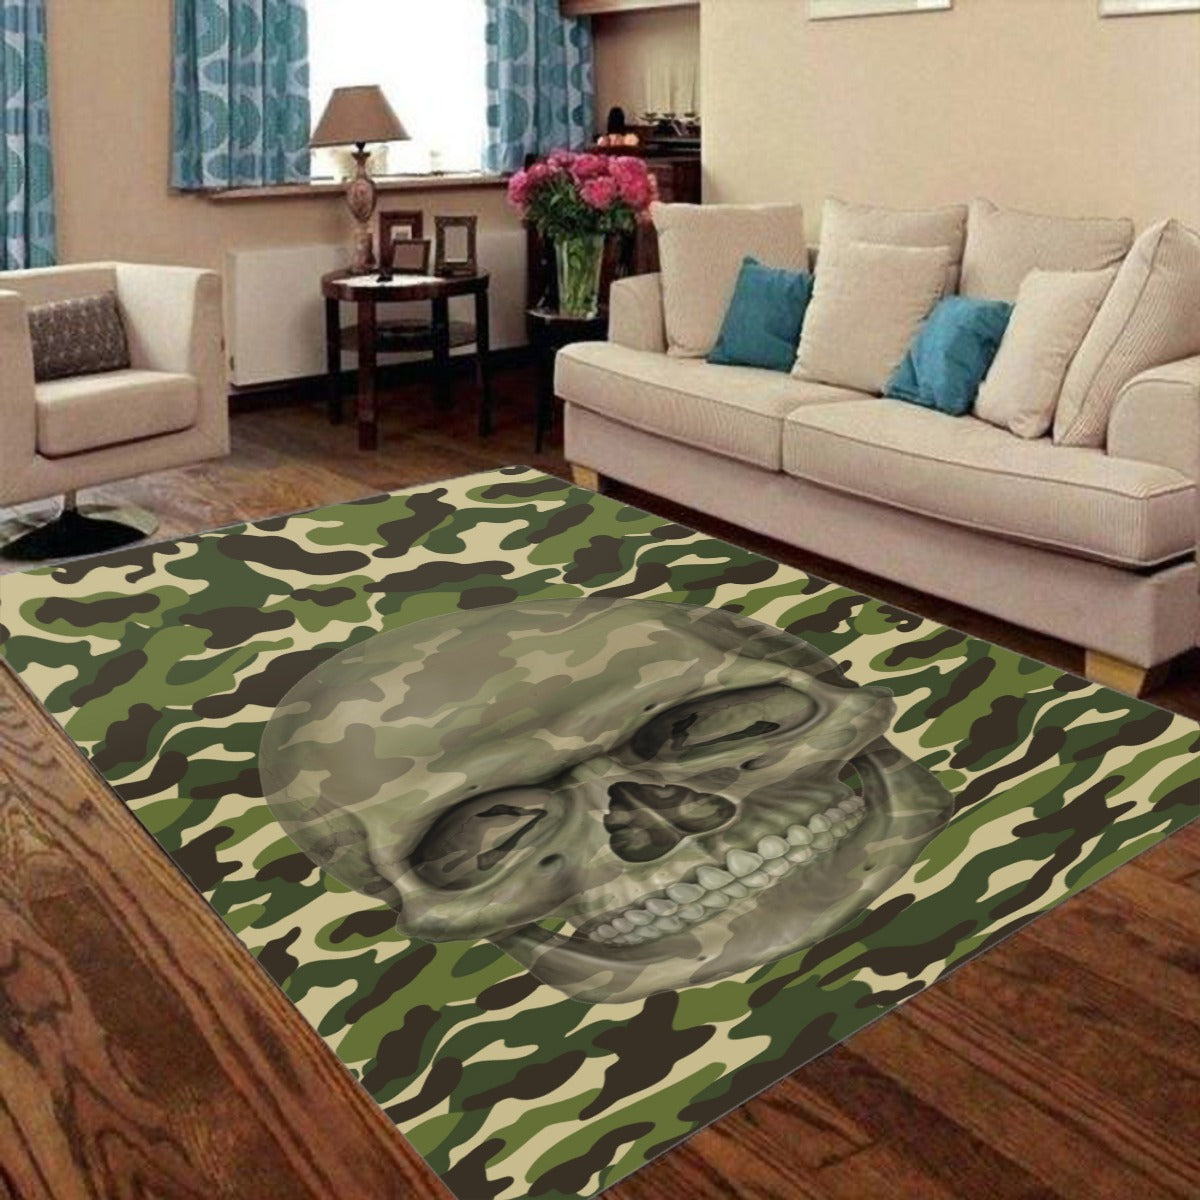 Skull Halloween Gothic Foldable Rectangular Floor Mat